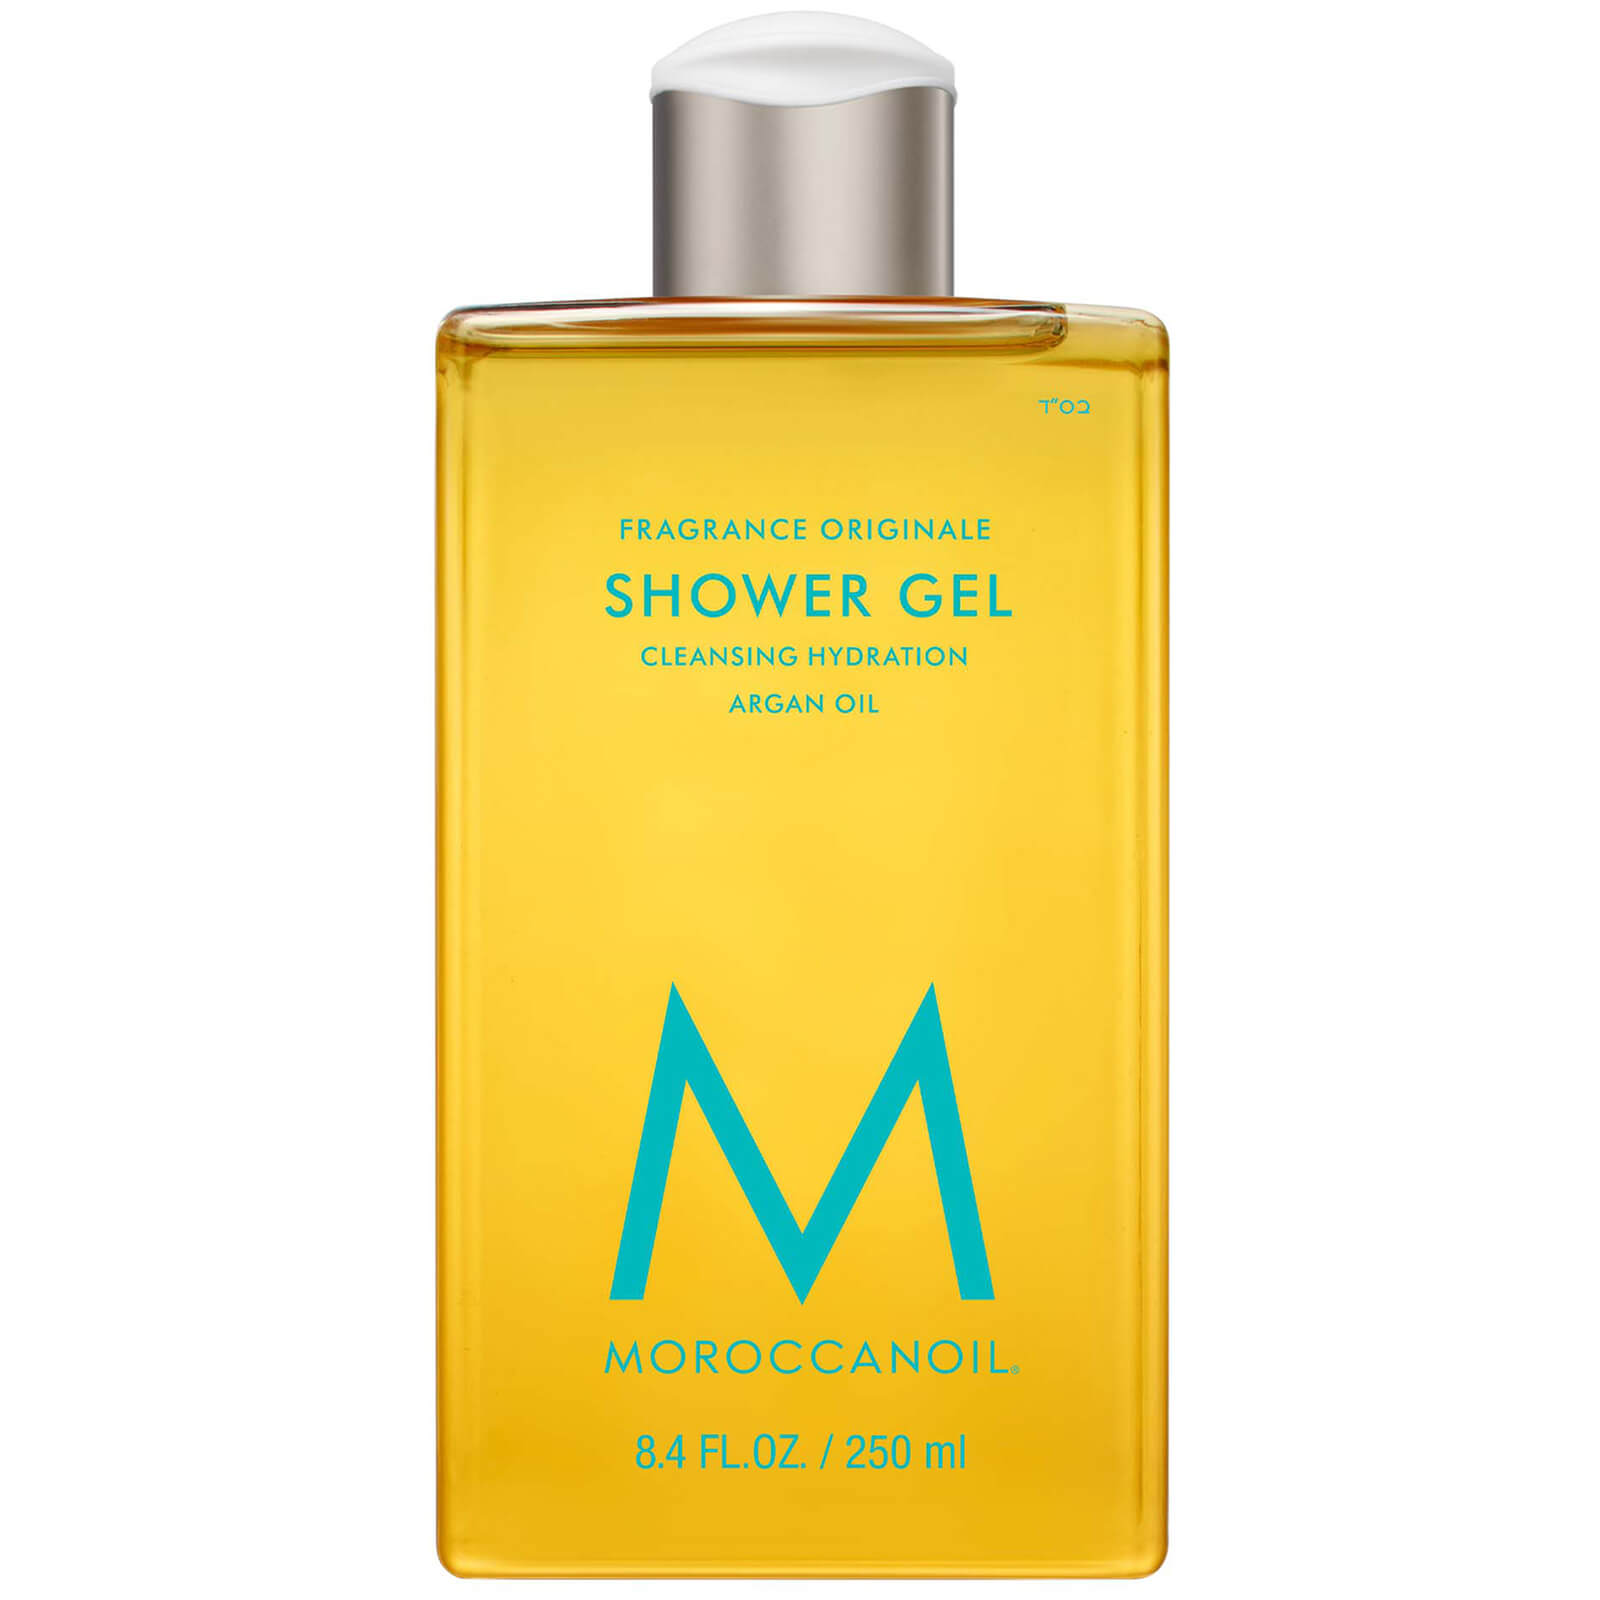 Shop Moroccanoil Fragrance Originale Shower Gel 250ml